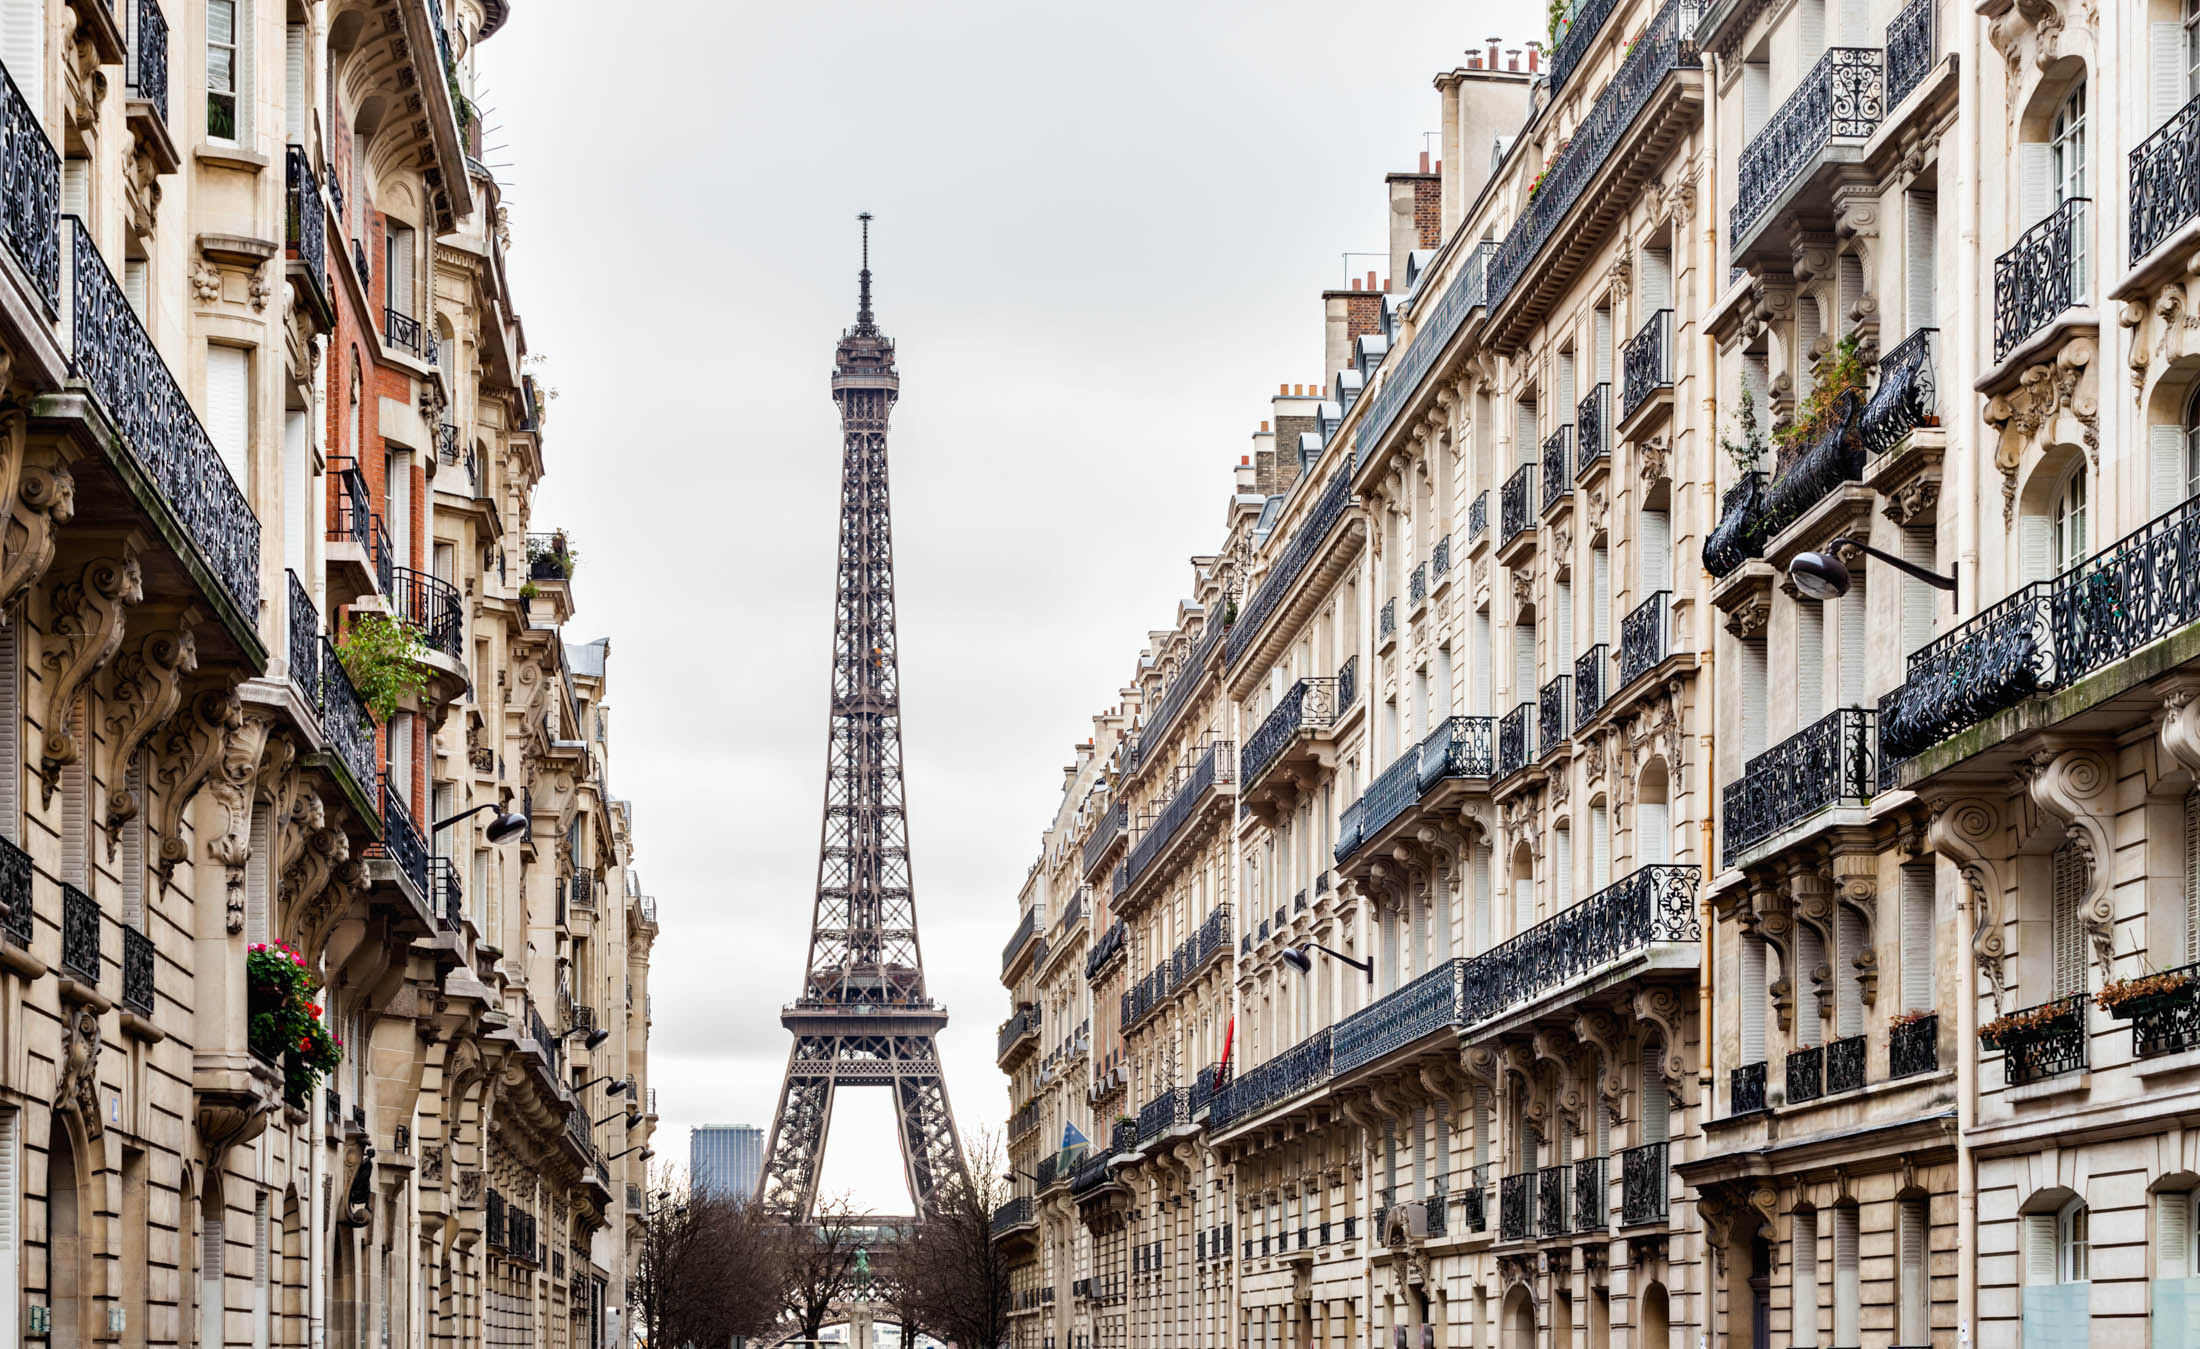 Eiffel Tower and Avenue d'Eylau, Paris.